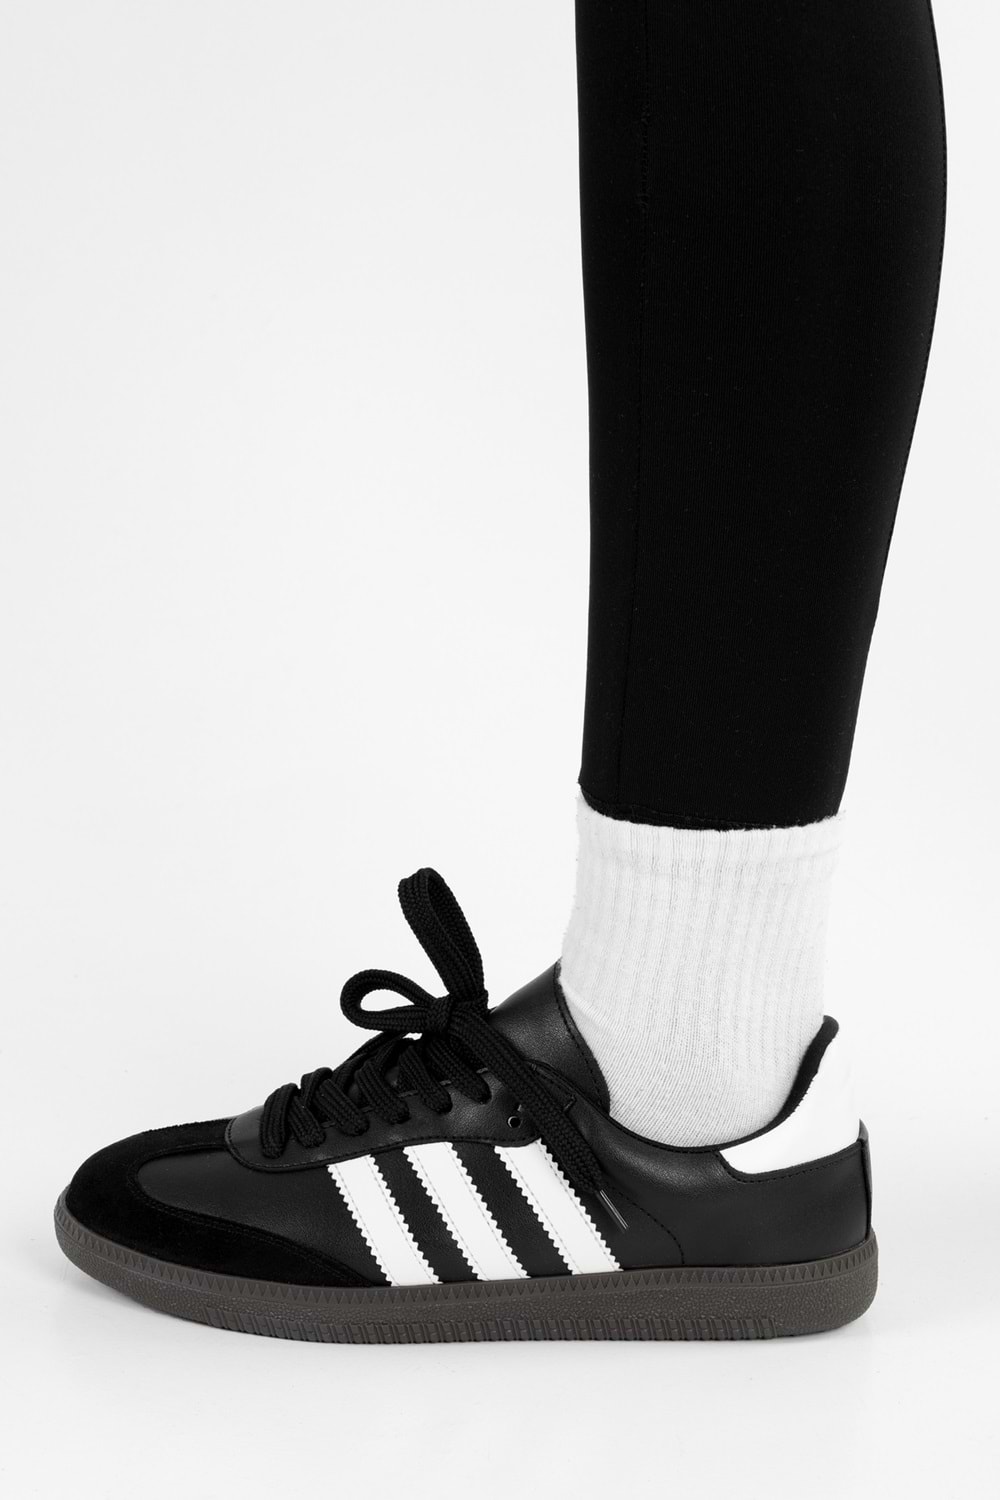 Kadın Sambai Siyah-Beyaz Çizgili Düz Spor Ayakkabı